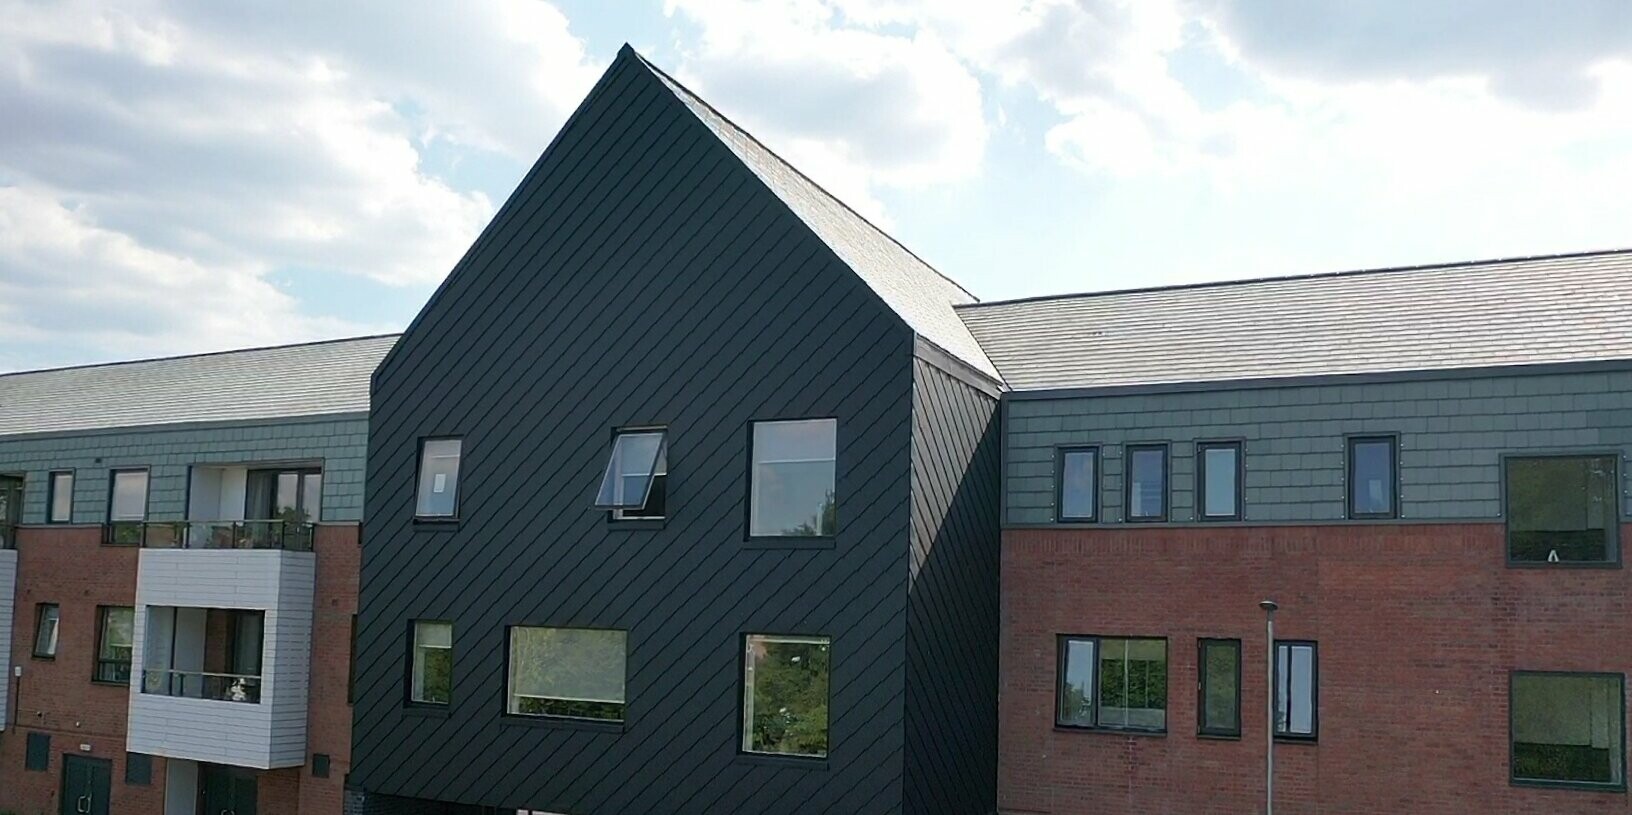 Budova hlavního vchodu do budovy j opláštěná do hliníkových šablon 29 × 29 v barvě P.10 černé od PREFA.